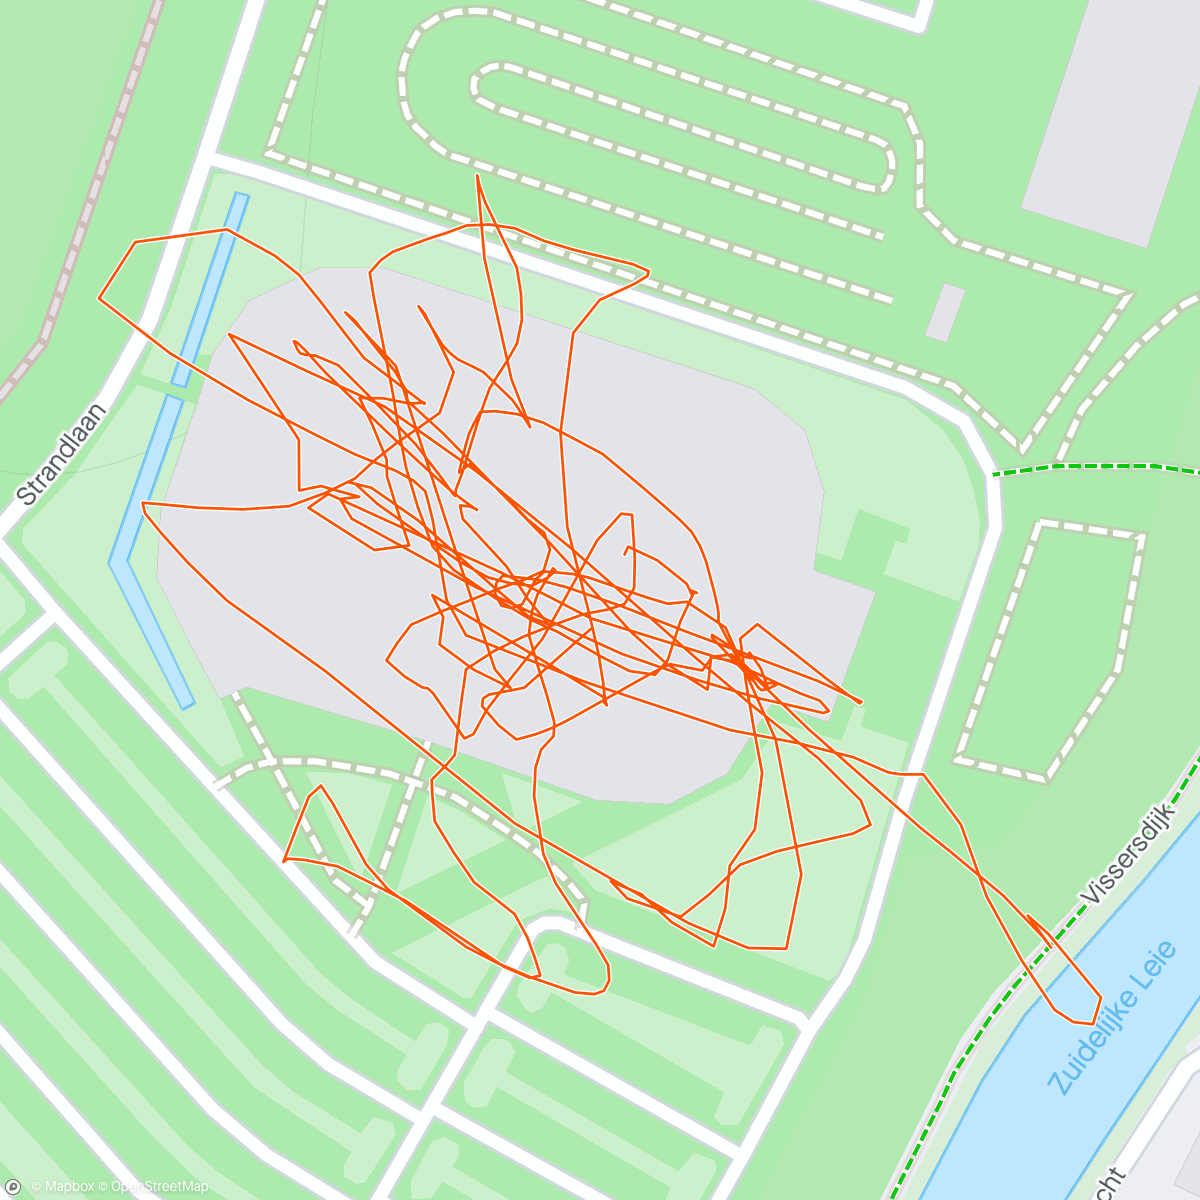 「Strontweer」活動的地圖